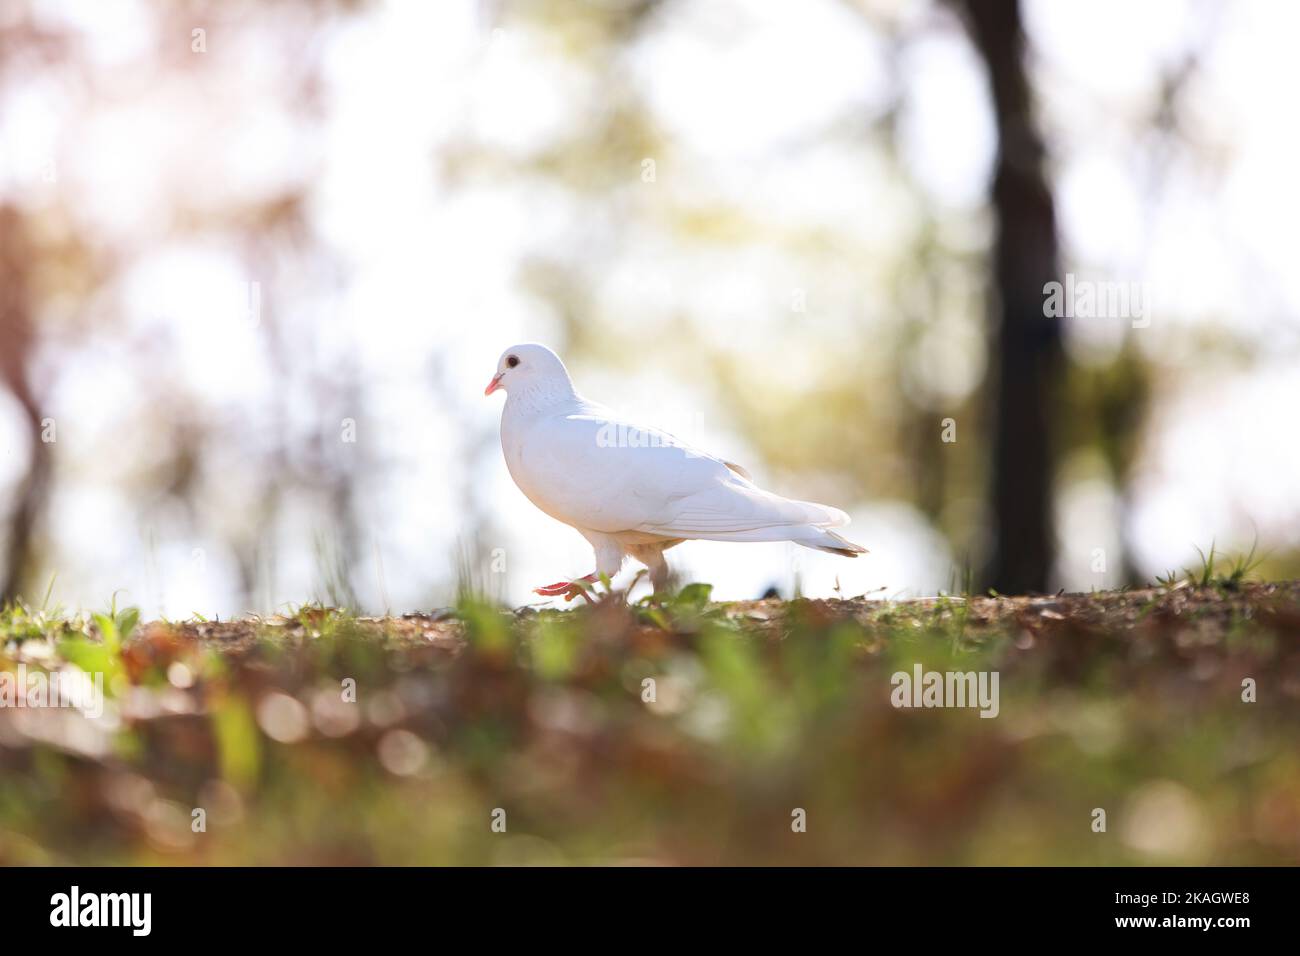 Belle colombe blanche symbolisant l'espoir, la paix et la liberté et un arrière-plan lumineux dans un parc forestier Banque D'Images